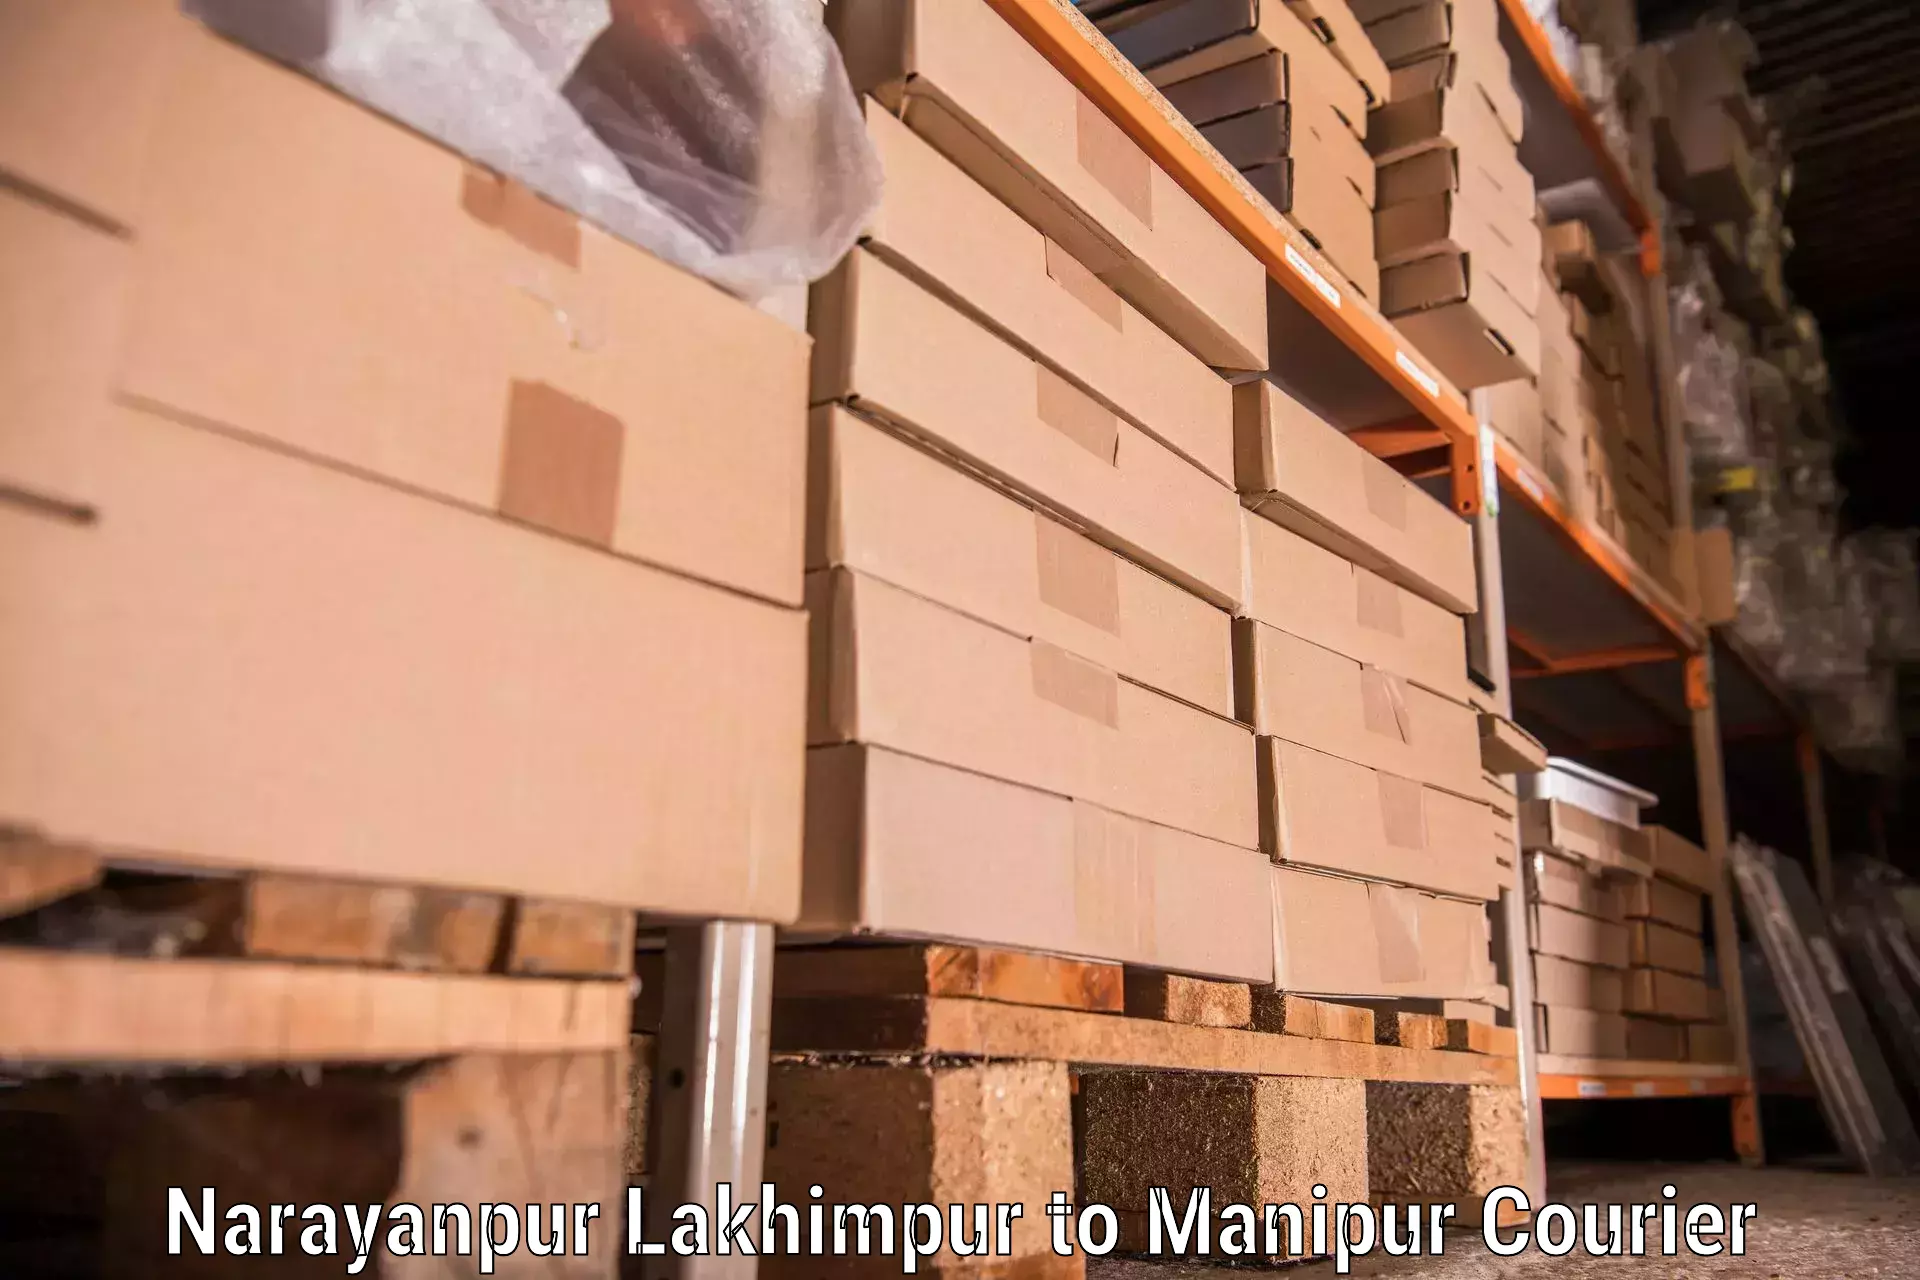 Furniture moving service Narayanpur Lakhimpur to Imphal